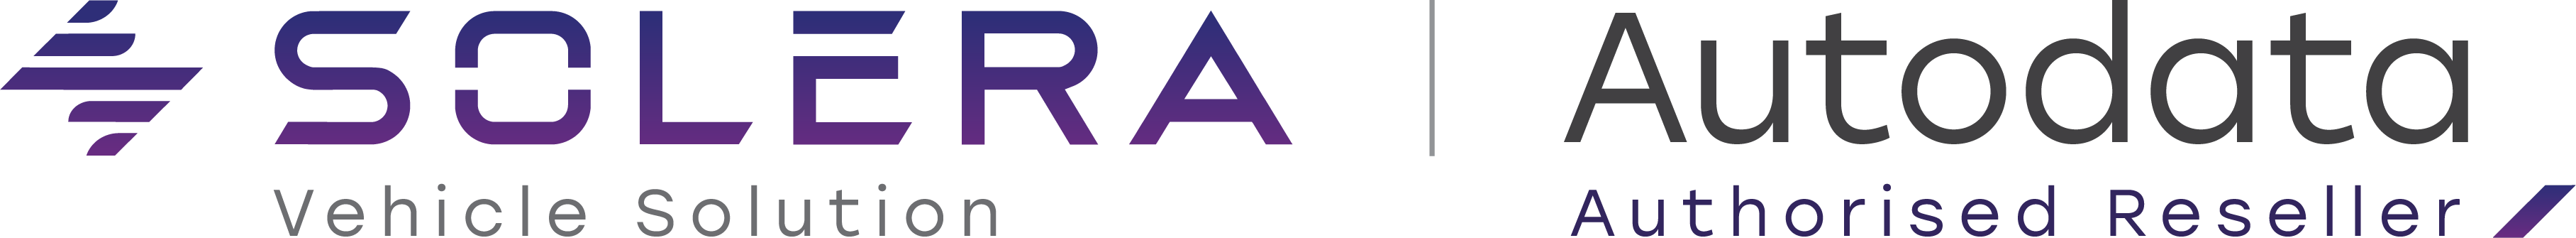 Logotip-podjetja-Solera-in-Autodata